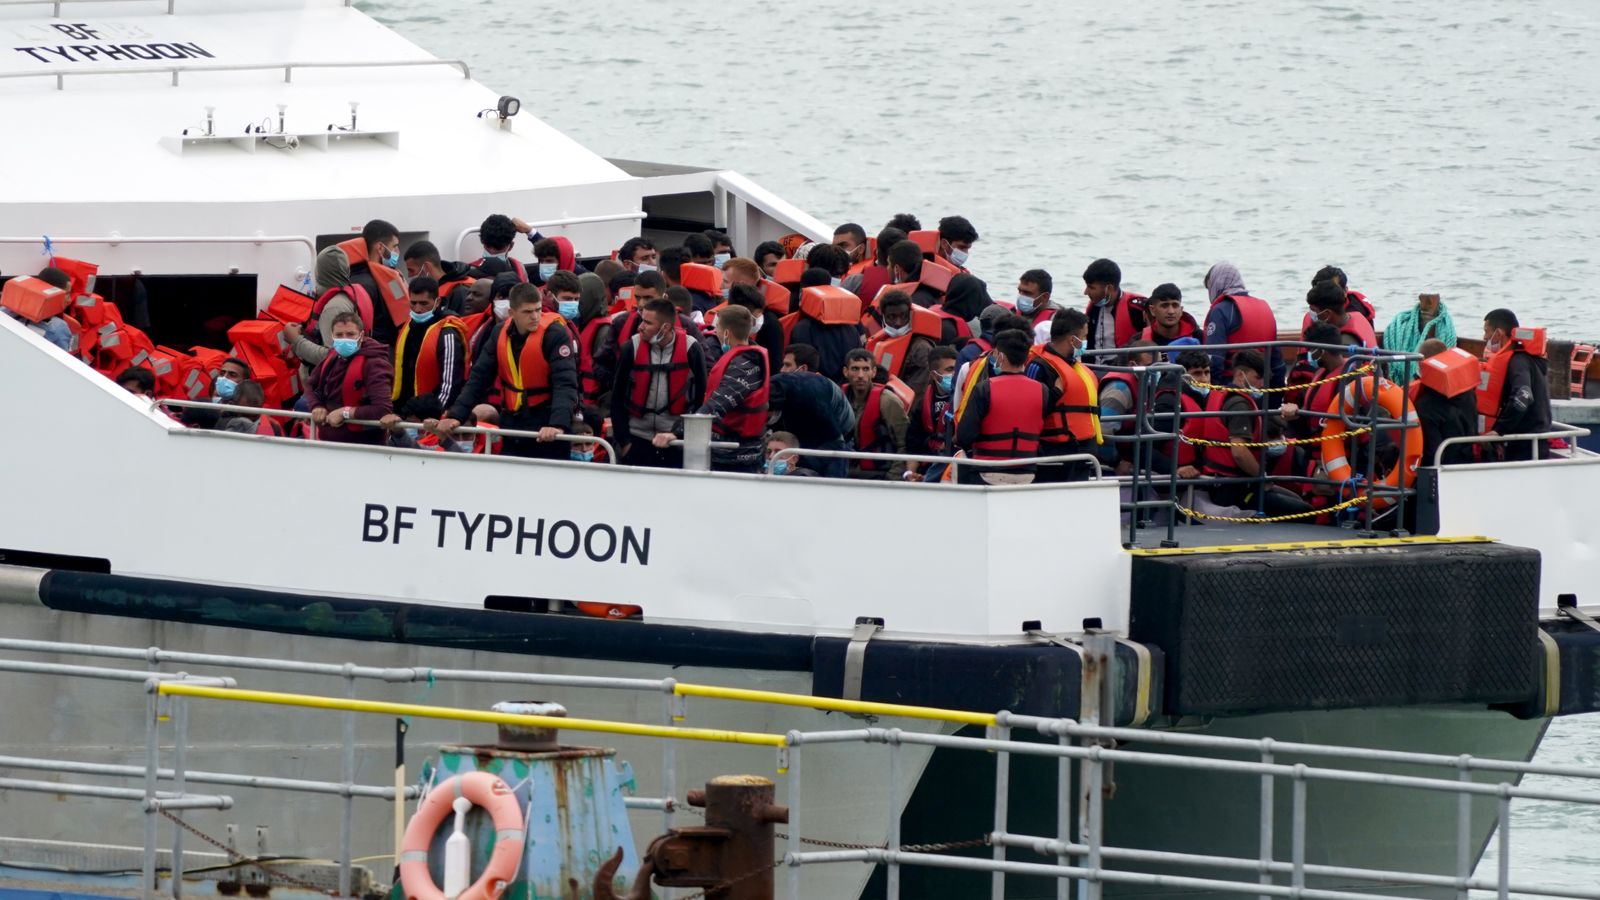 La police albanaise peut être amenée au Royaume-Uni pour aider à arrêter les traversées de la Manche |.  Nouvelles politiques